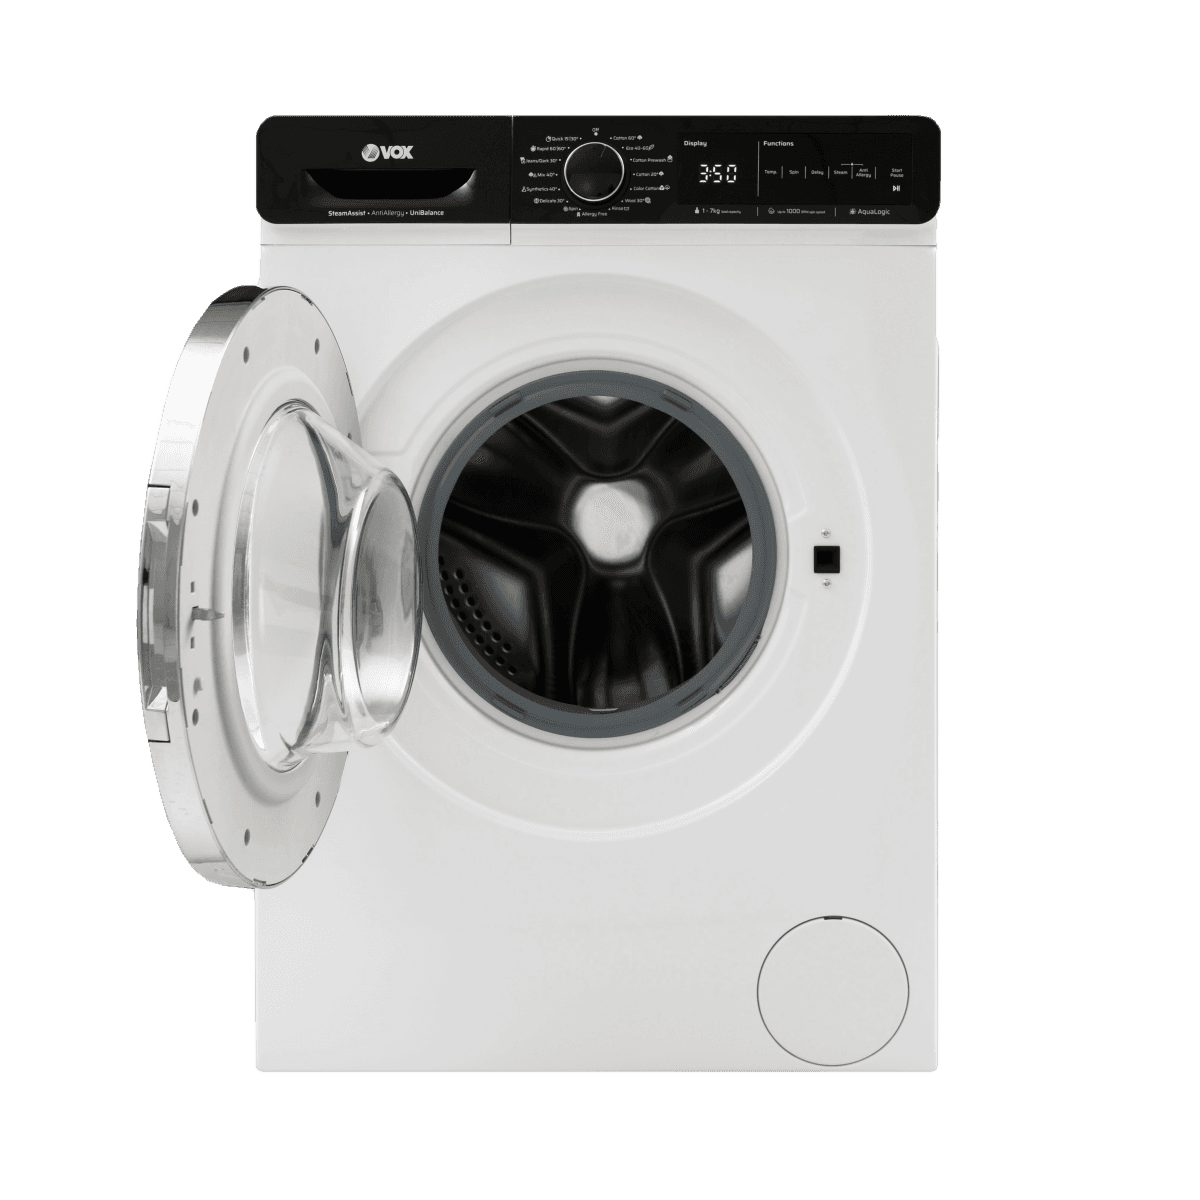 Selected image for VOX Mašina za pranje veša WM1070-SAT2T15D